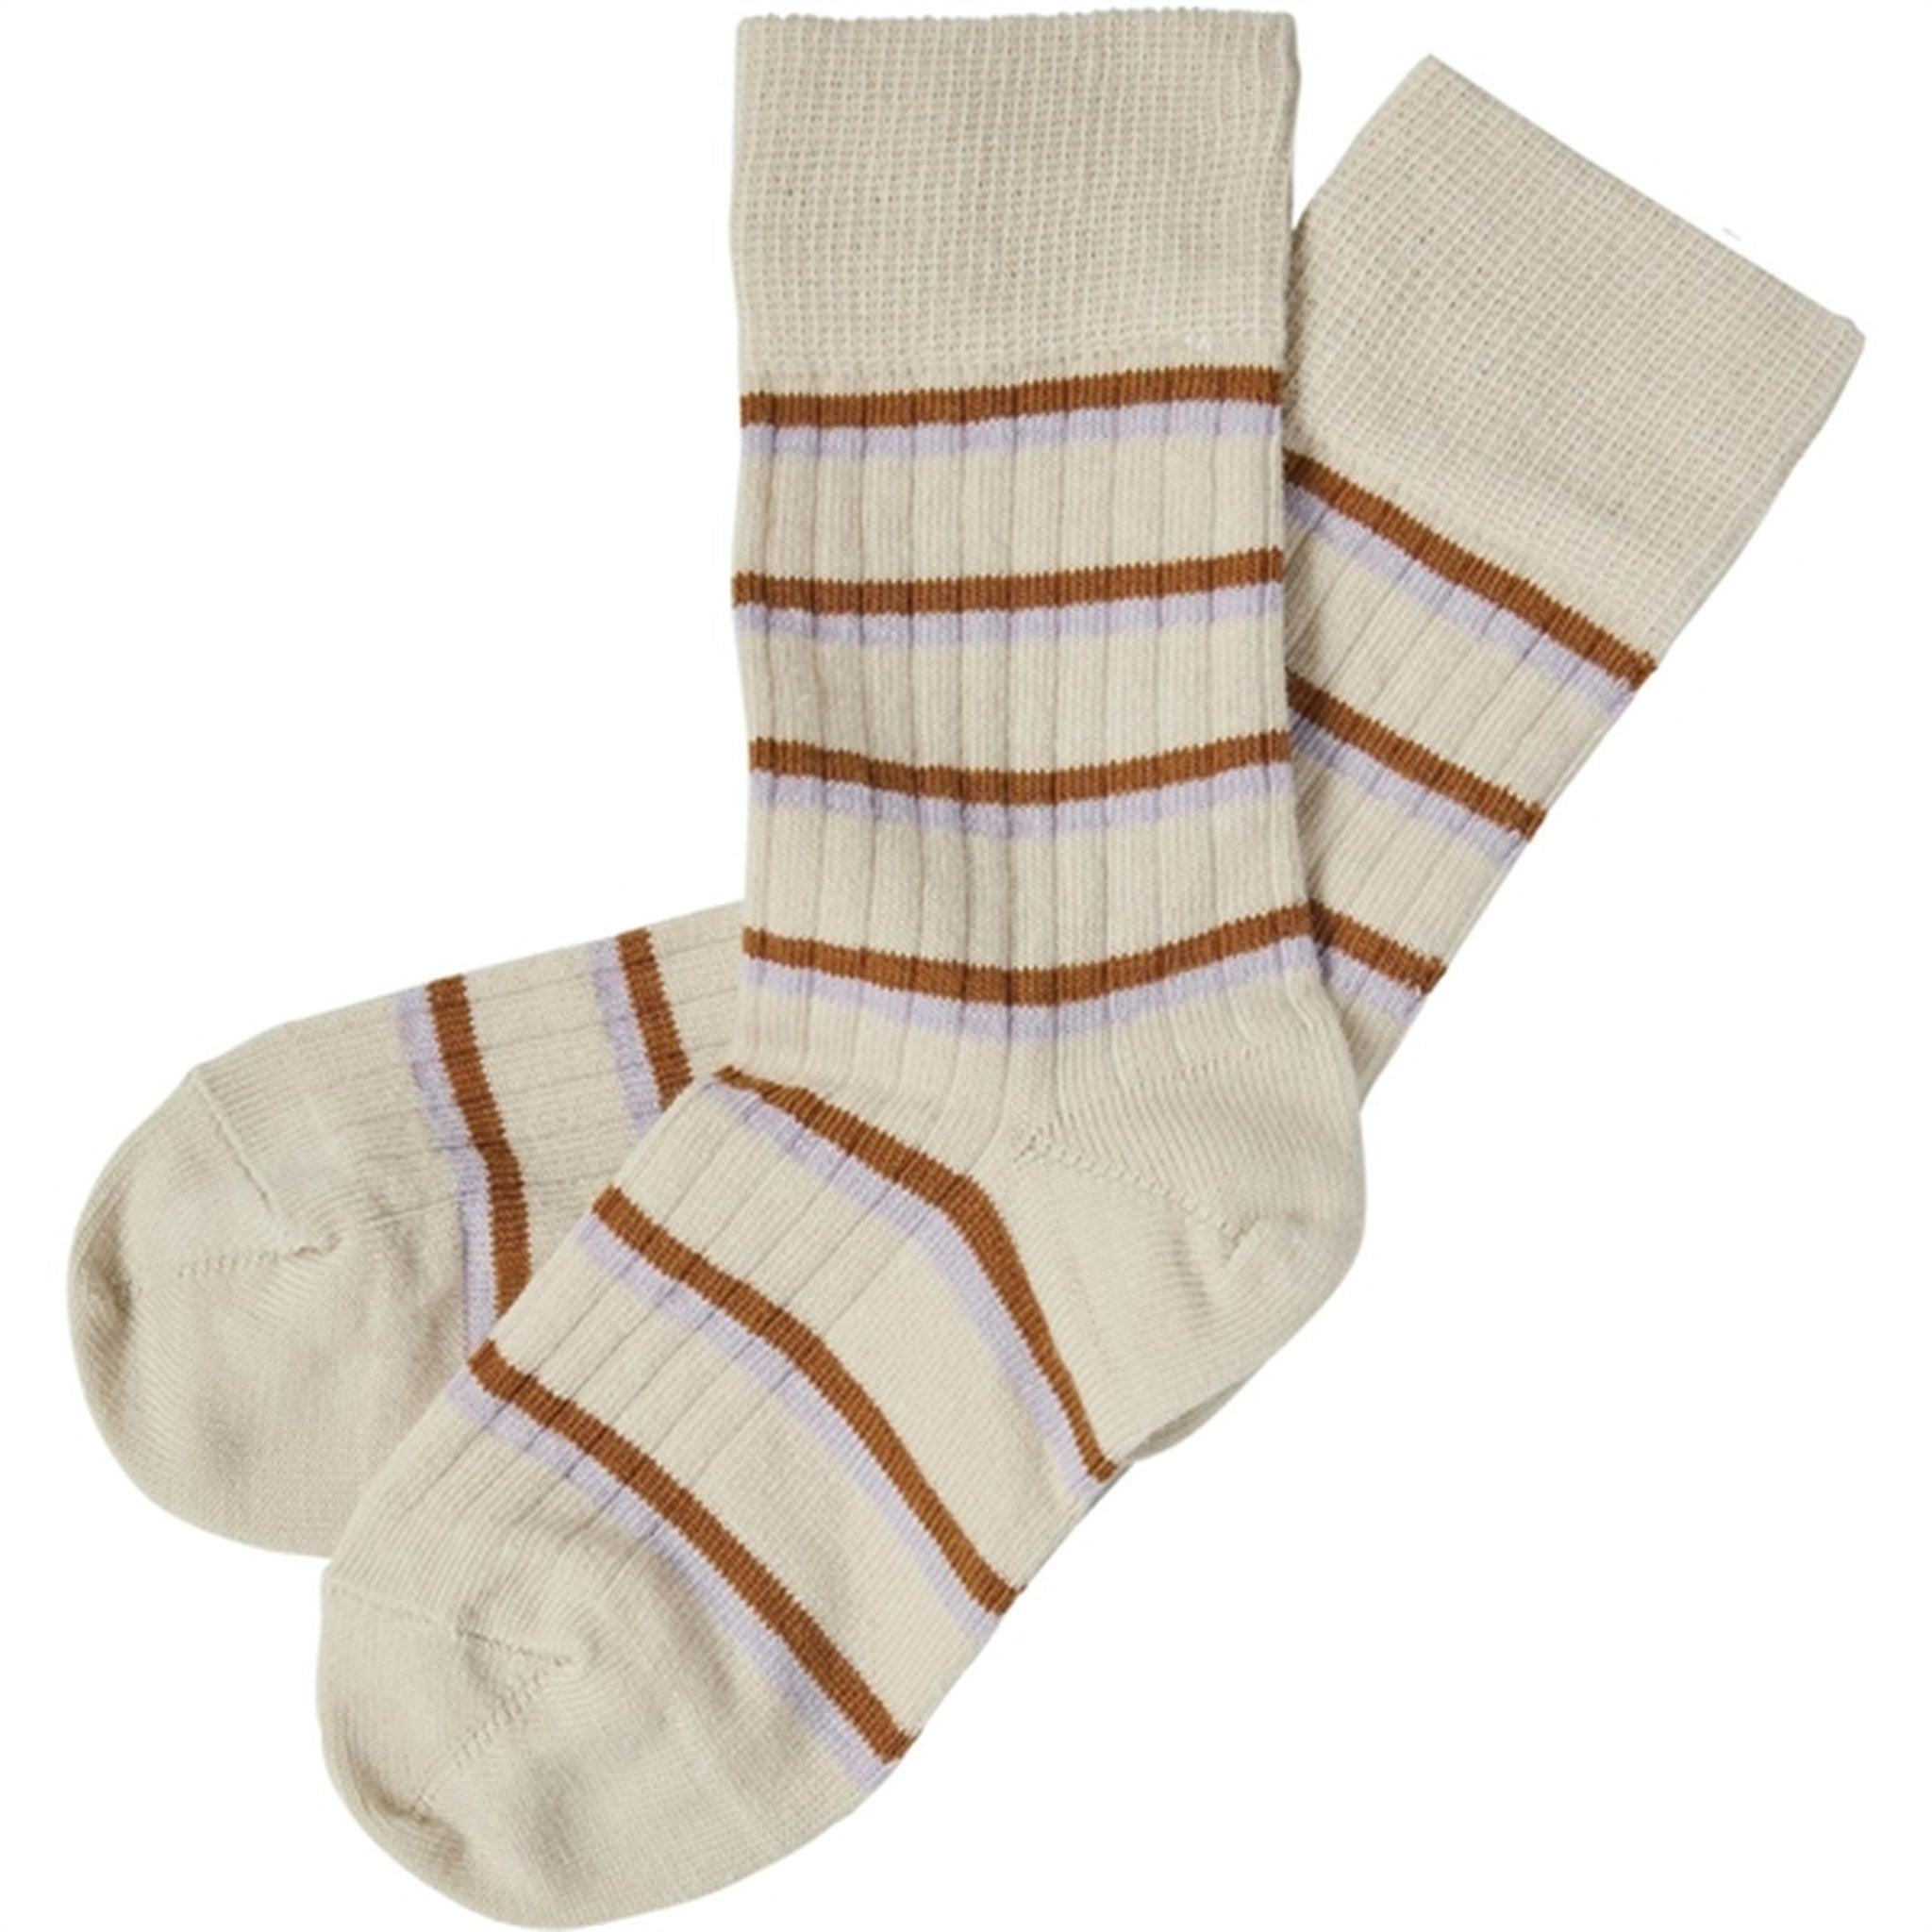 FUB Heather/Rust 2-pack Thin Striped Socks 2